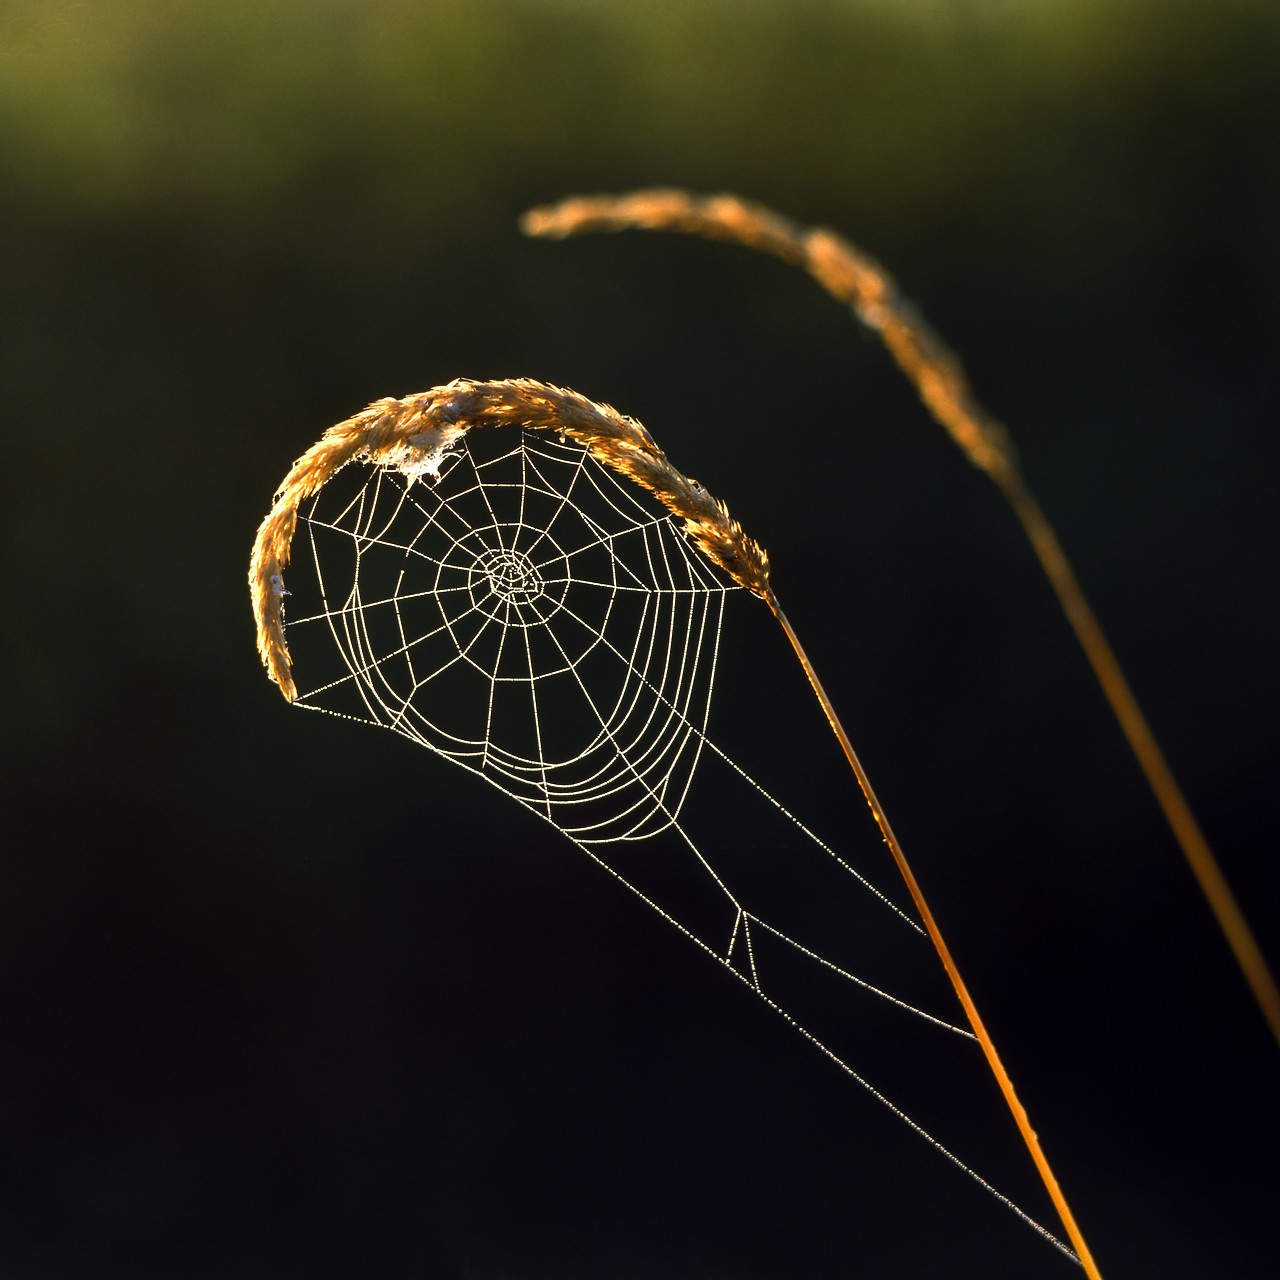 #010362-1 - Orb Spiderweb on Grass, Norfolk, England